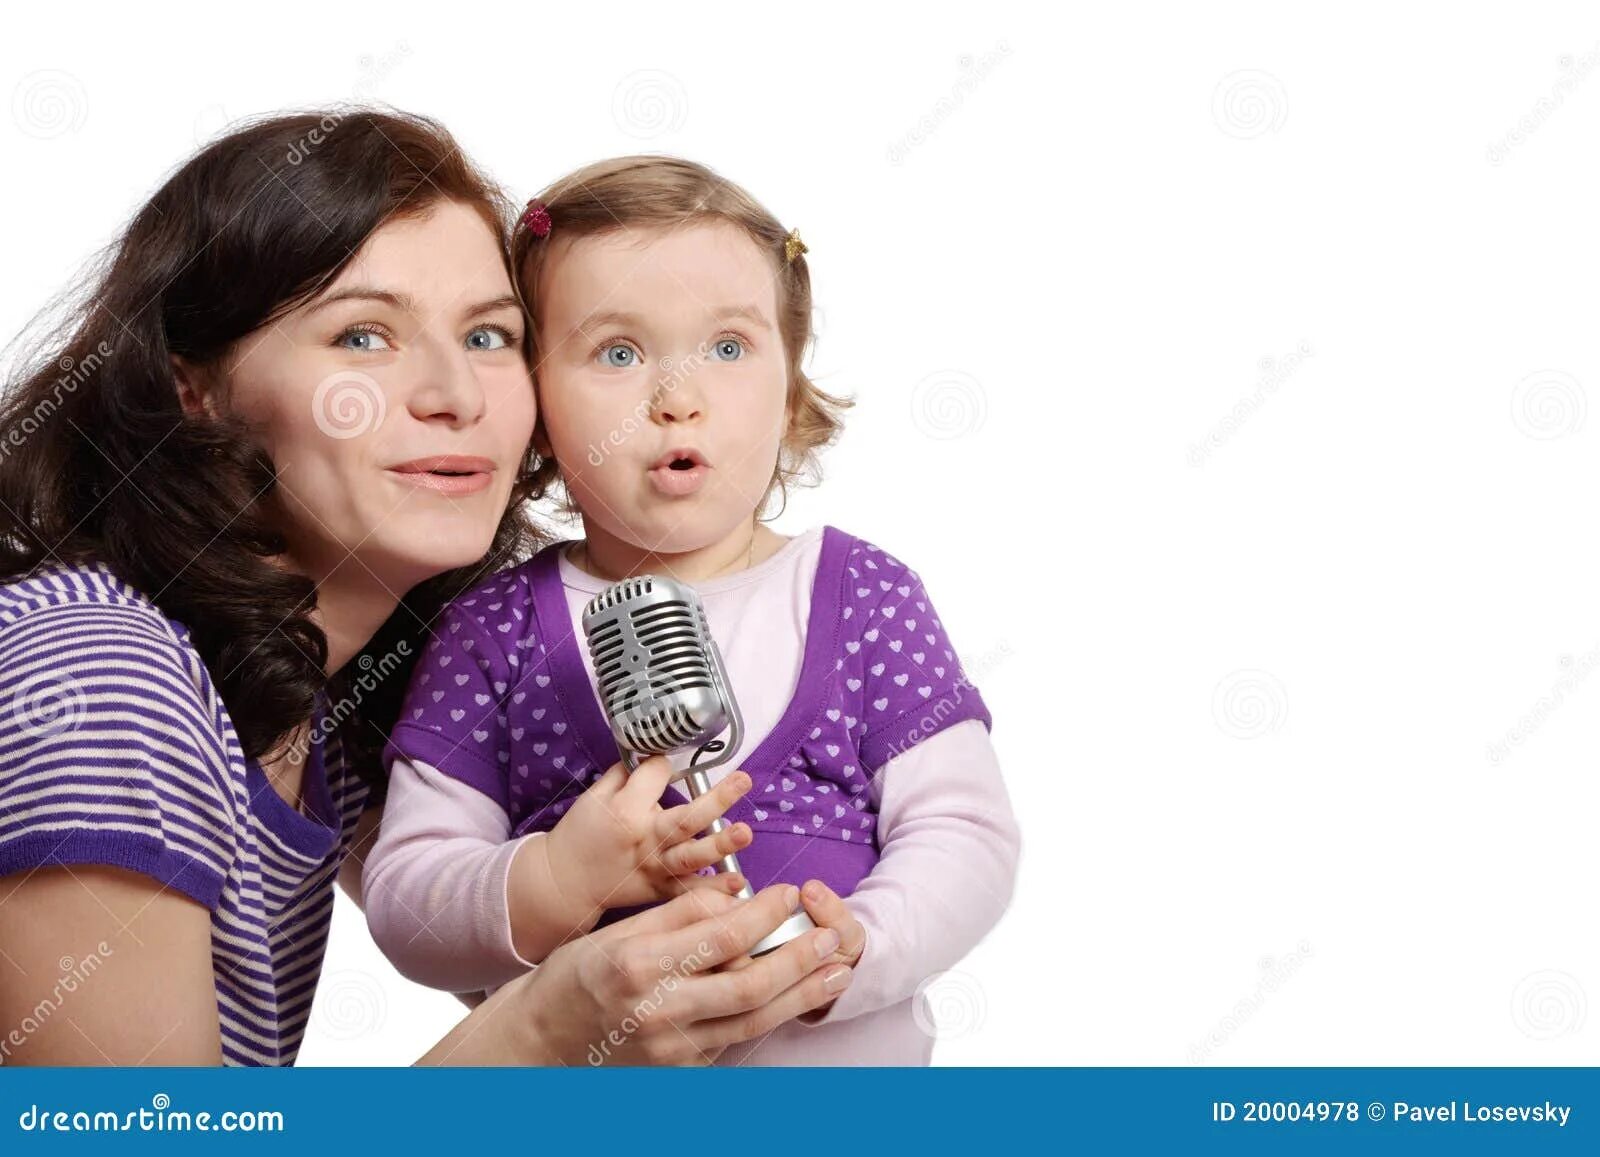 Мама поет ребенку. Мама с дочкой поют. Мама поет в микрофон. Ребенок с мамой поют вместе.